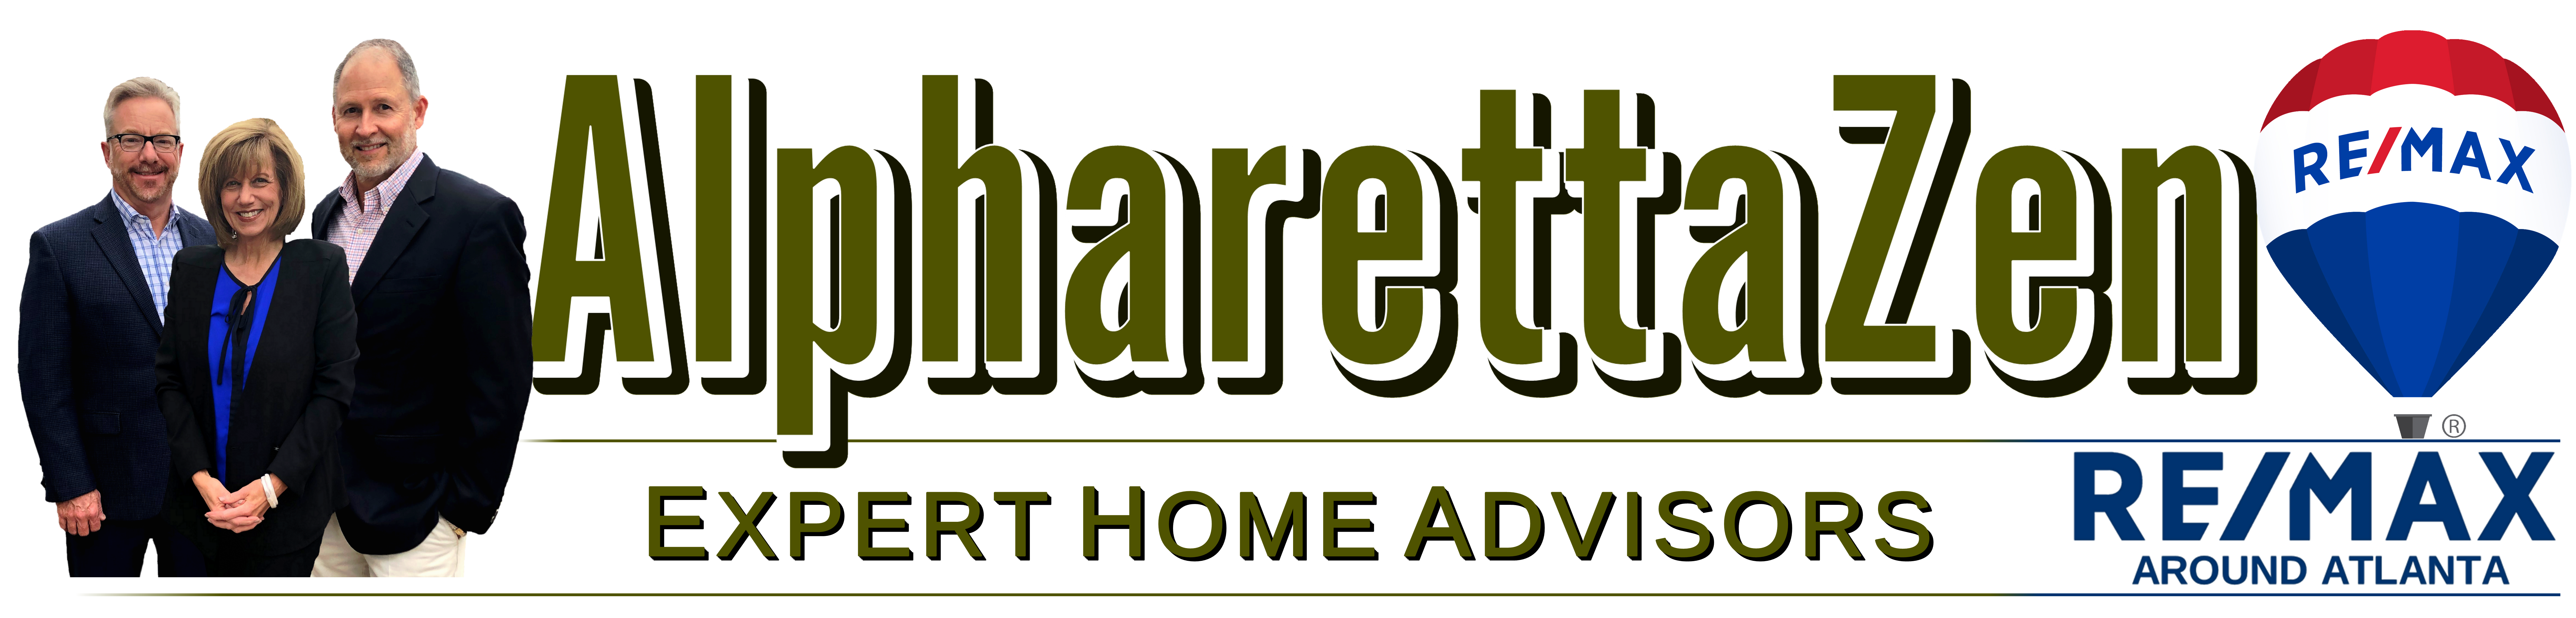 AlpharettaZen Real Estate Expert Home Advisors